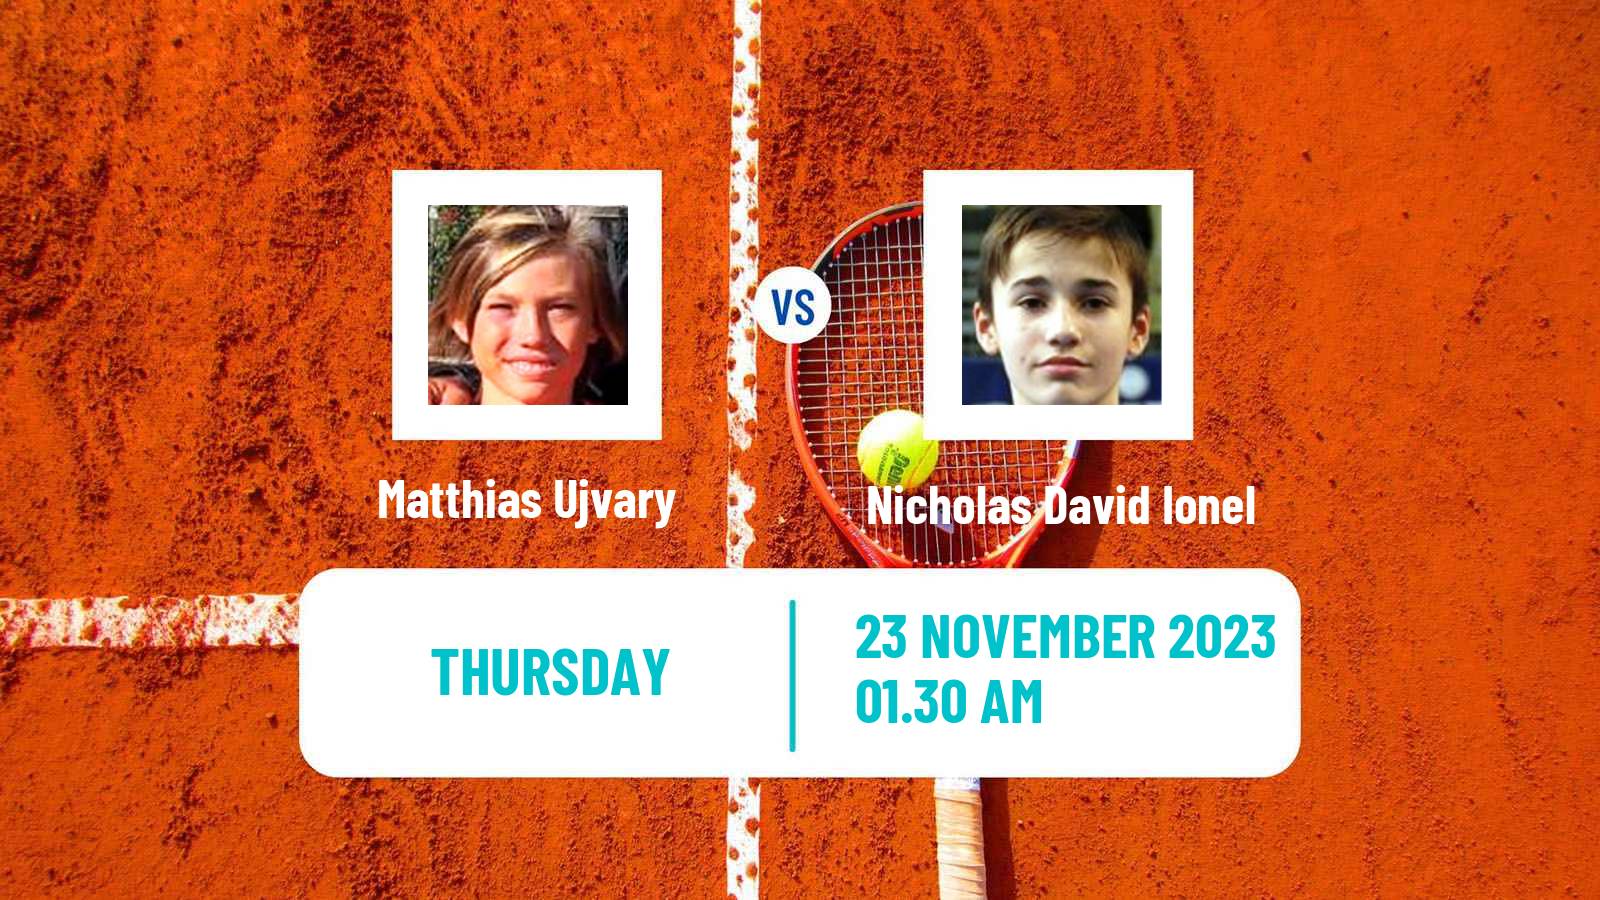 Tennis ITF M25 Antalya 3 Men Matthias Ujvary - Nicholas David Ionel